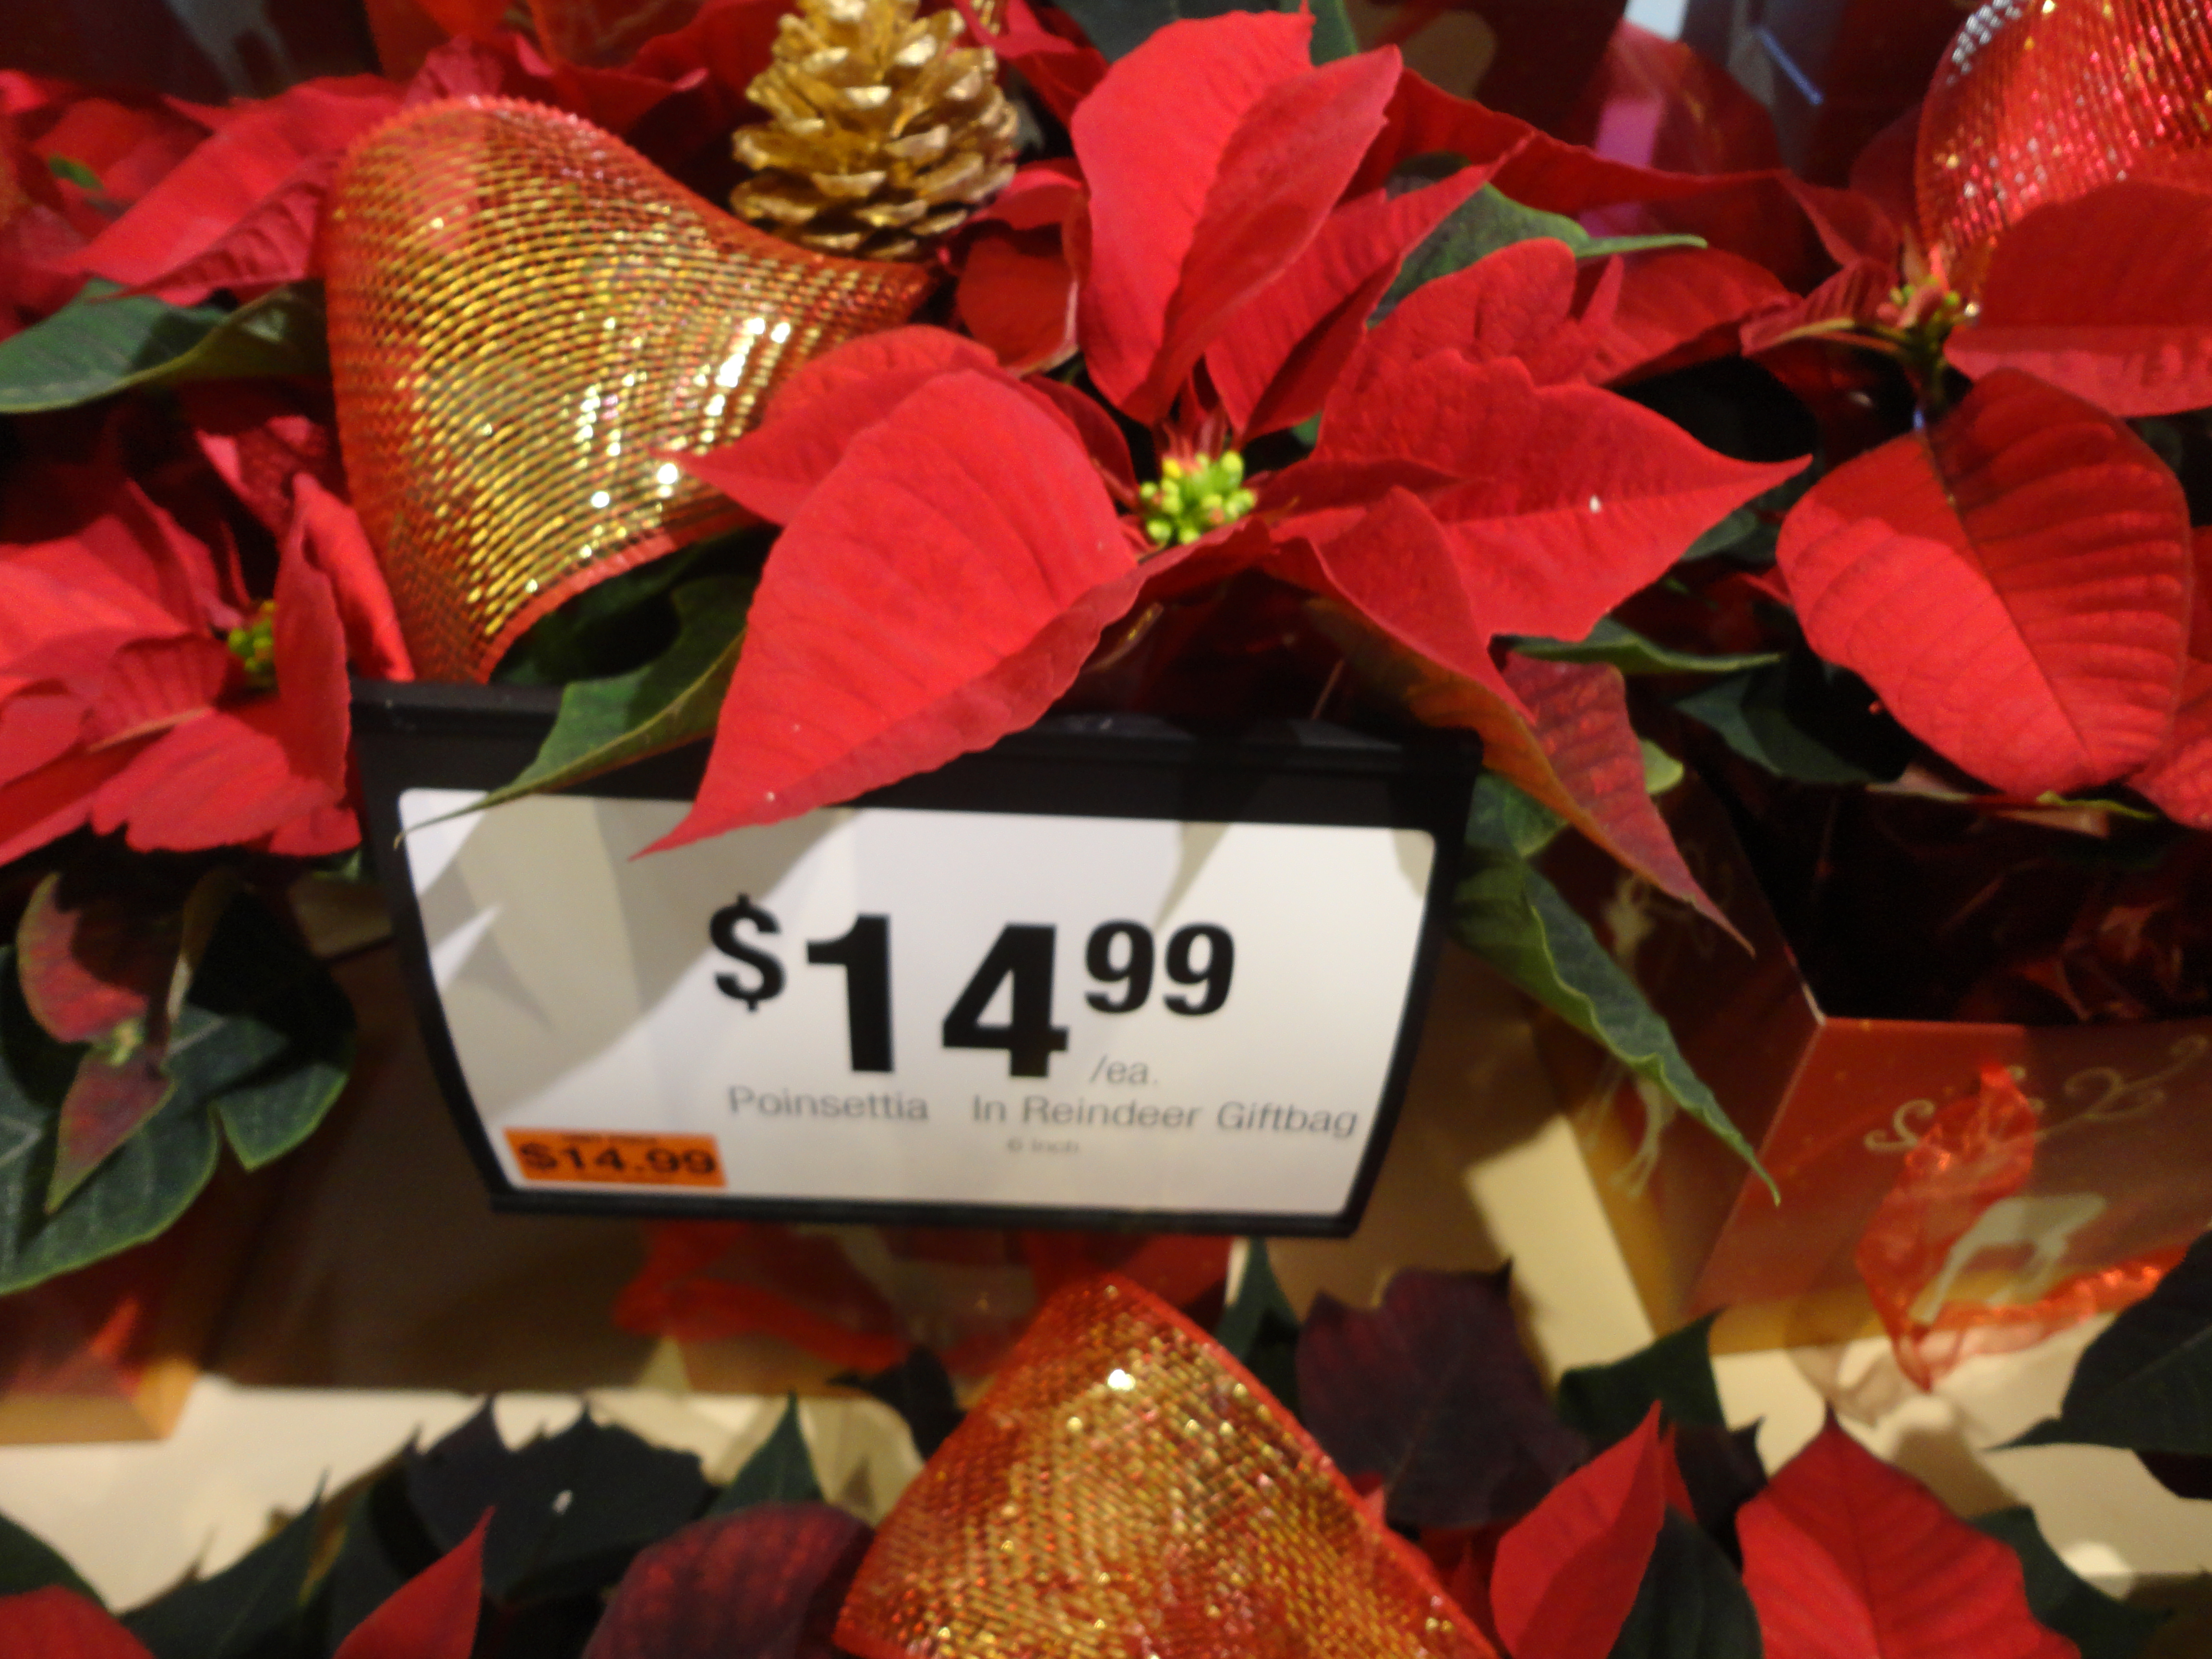 Giant's Poinsettia Prices | Shippensburg, PA - SHIP SAVES